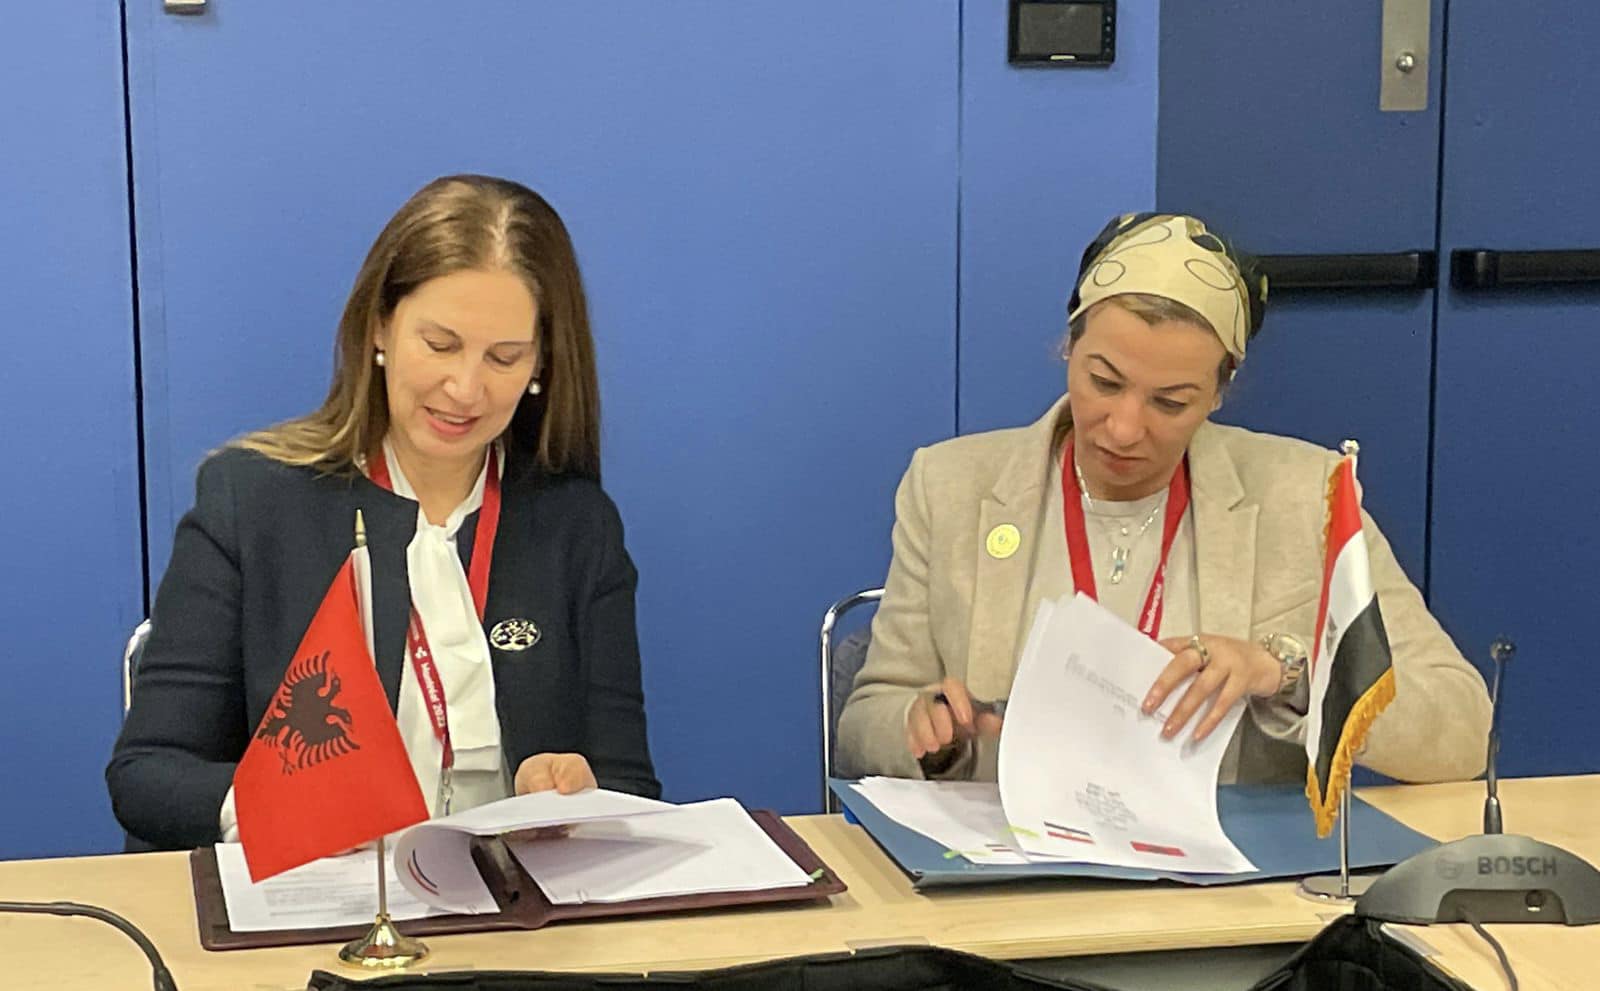 Montreal/ Nënshkruhet memorandumi i bashkëpunimit mes Shqipërisë dhe Egjiptit